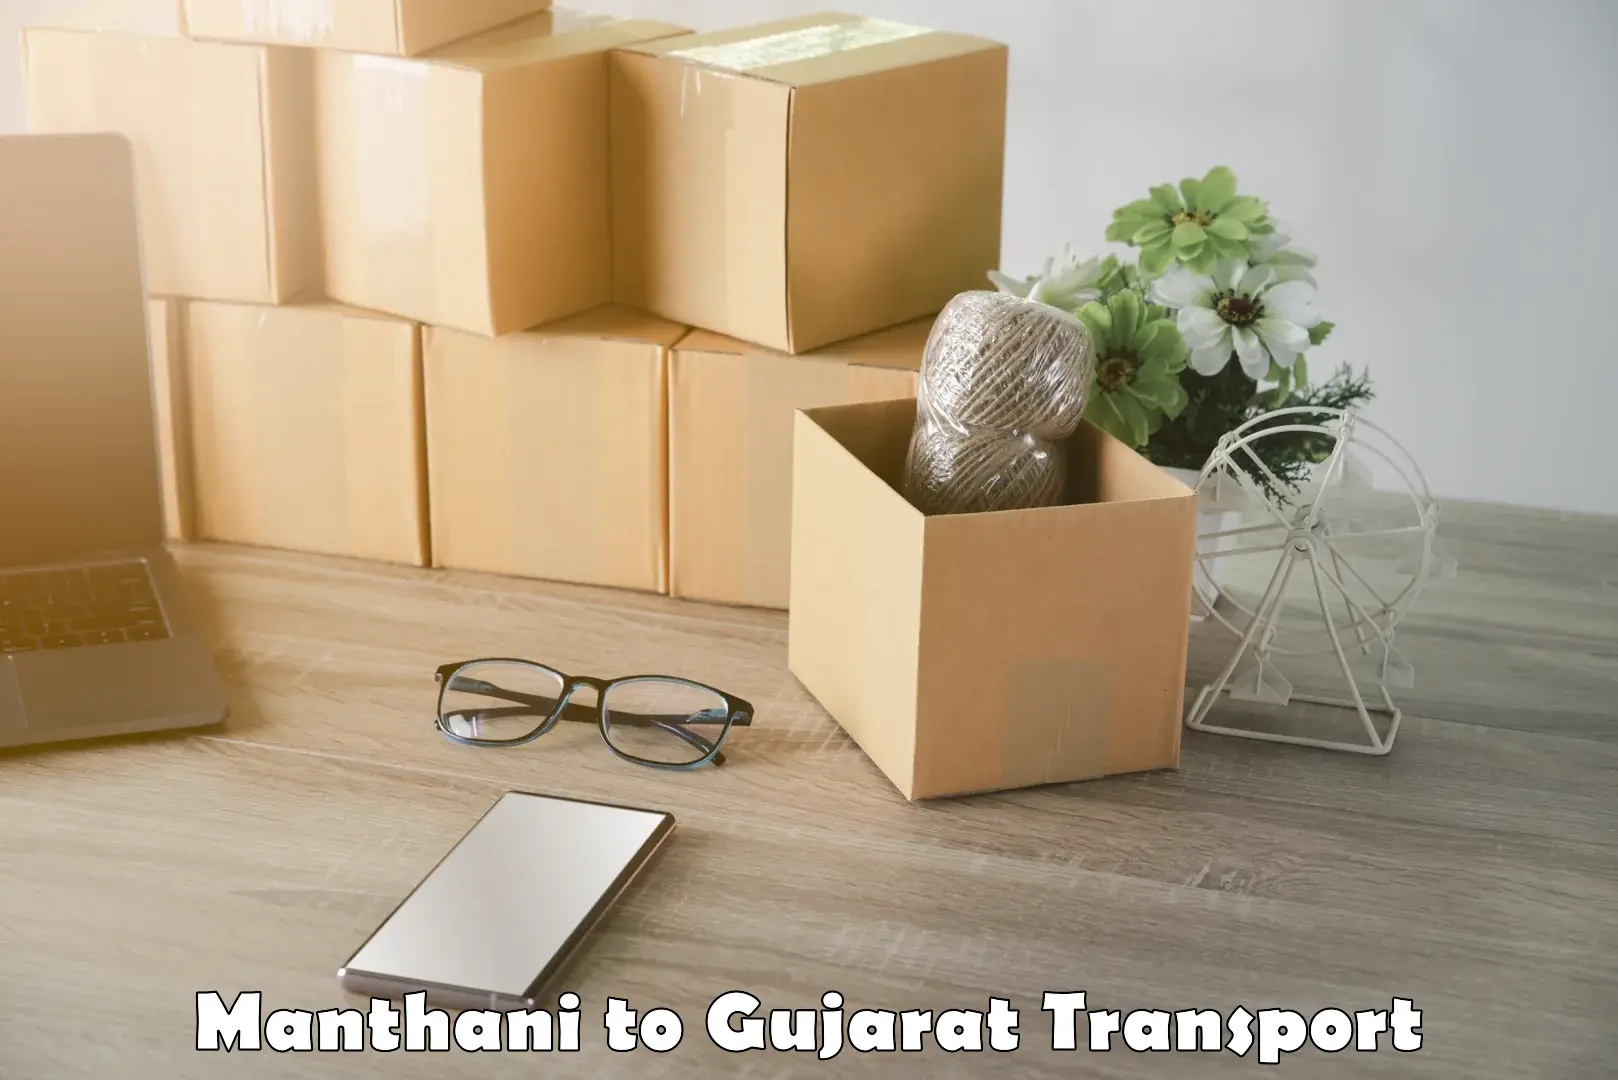 Furniture transport service Manthani to Vyara